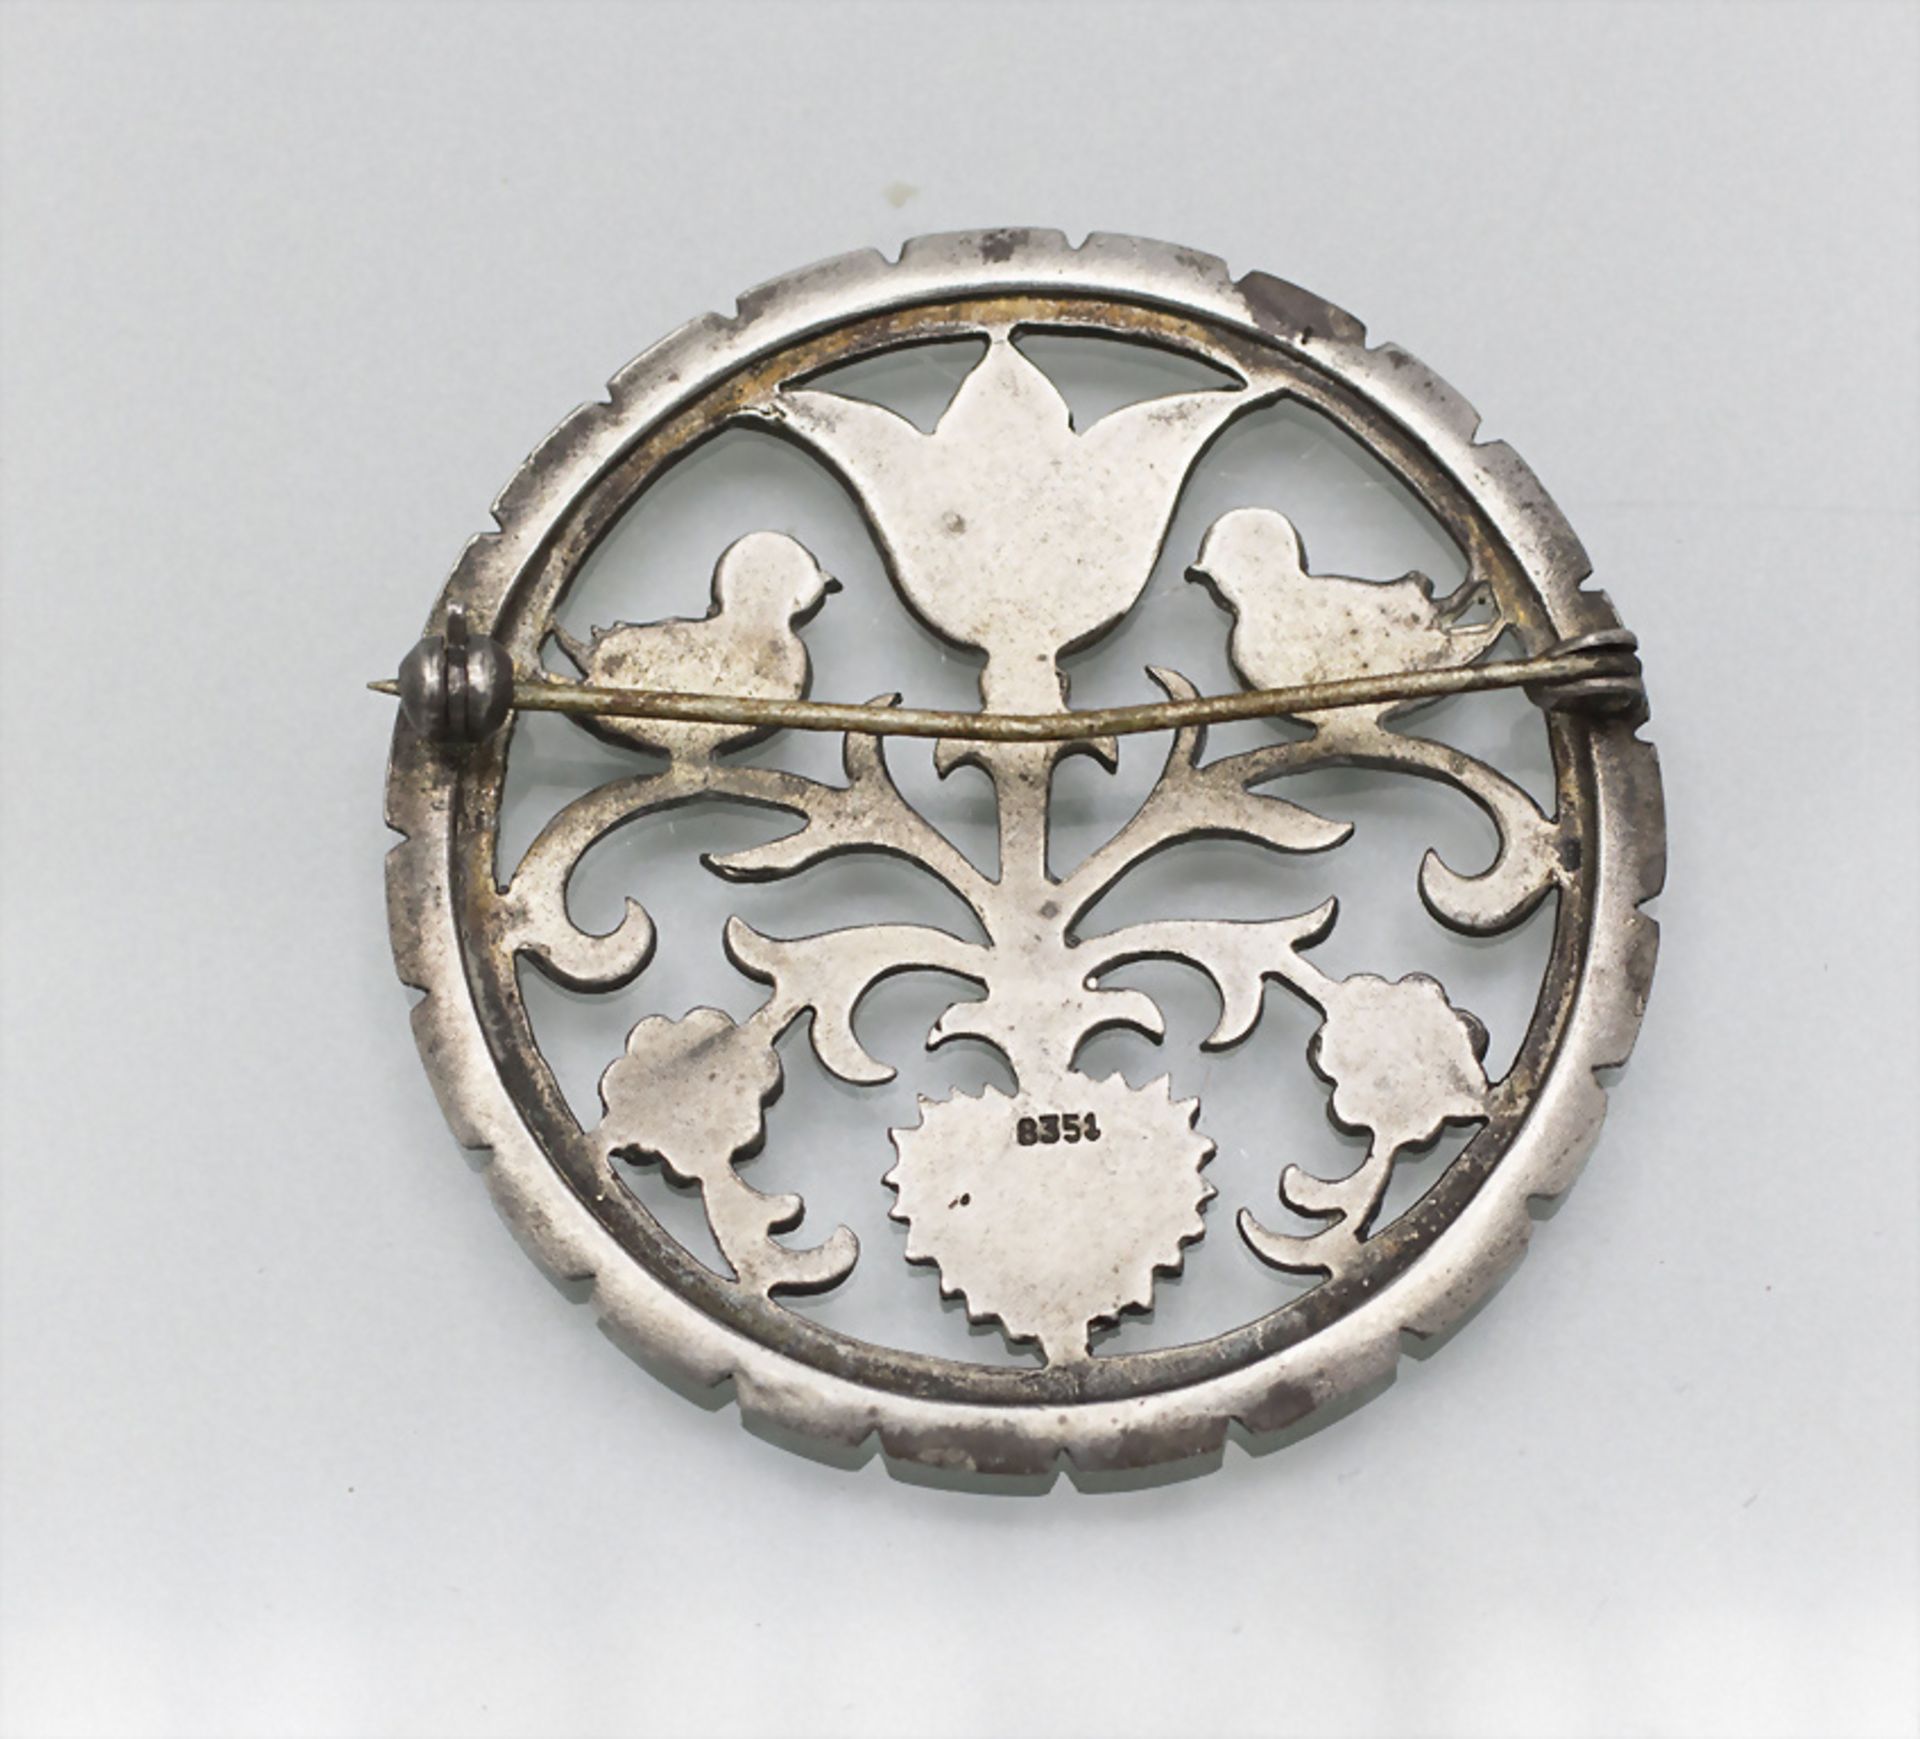 Jugendstil Silberbrosche mit Herz / An Art Nouveau silver brooch with birds and a heart, um 1920 - Image 2 of 2